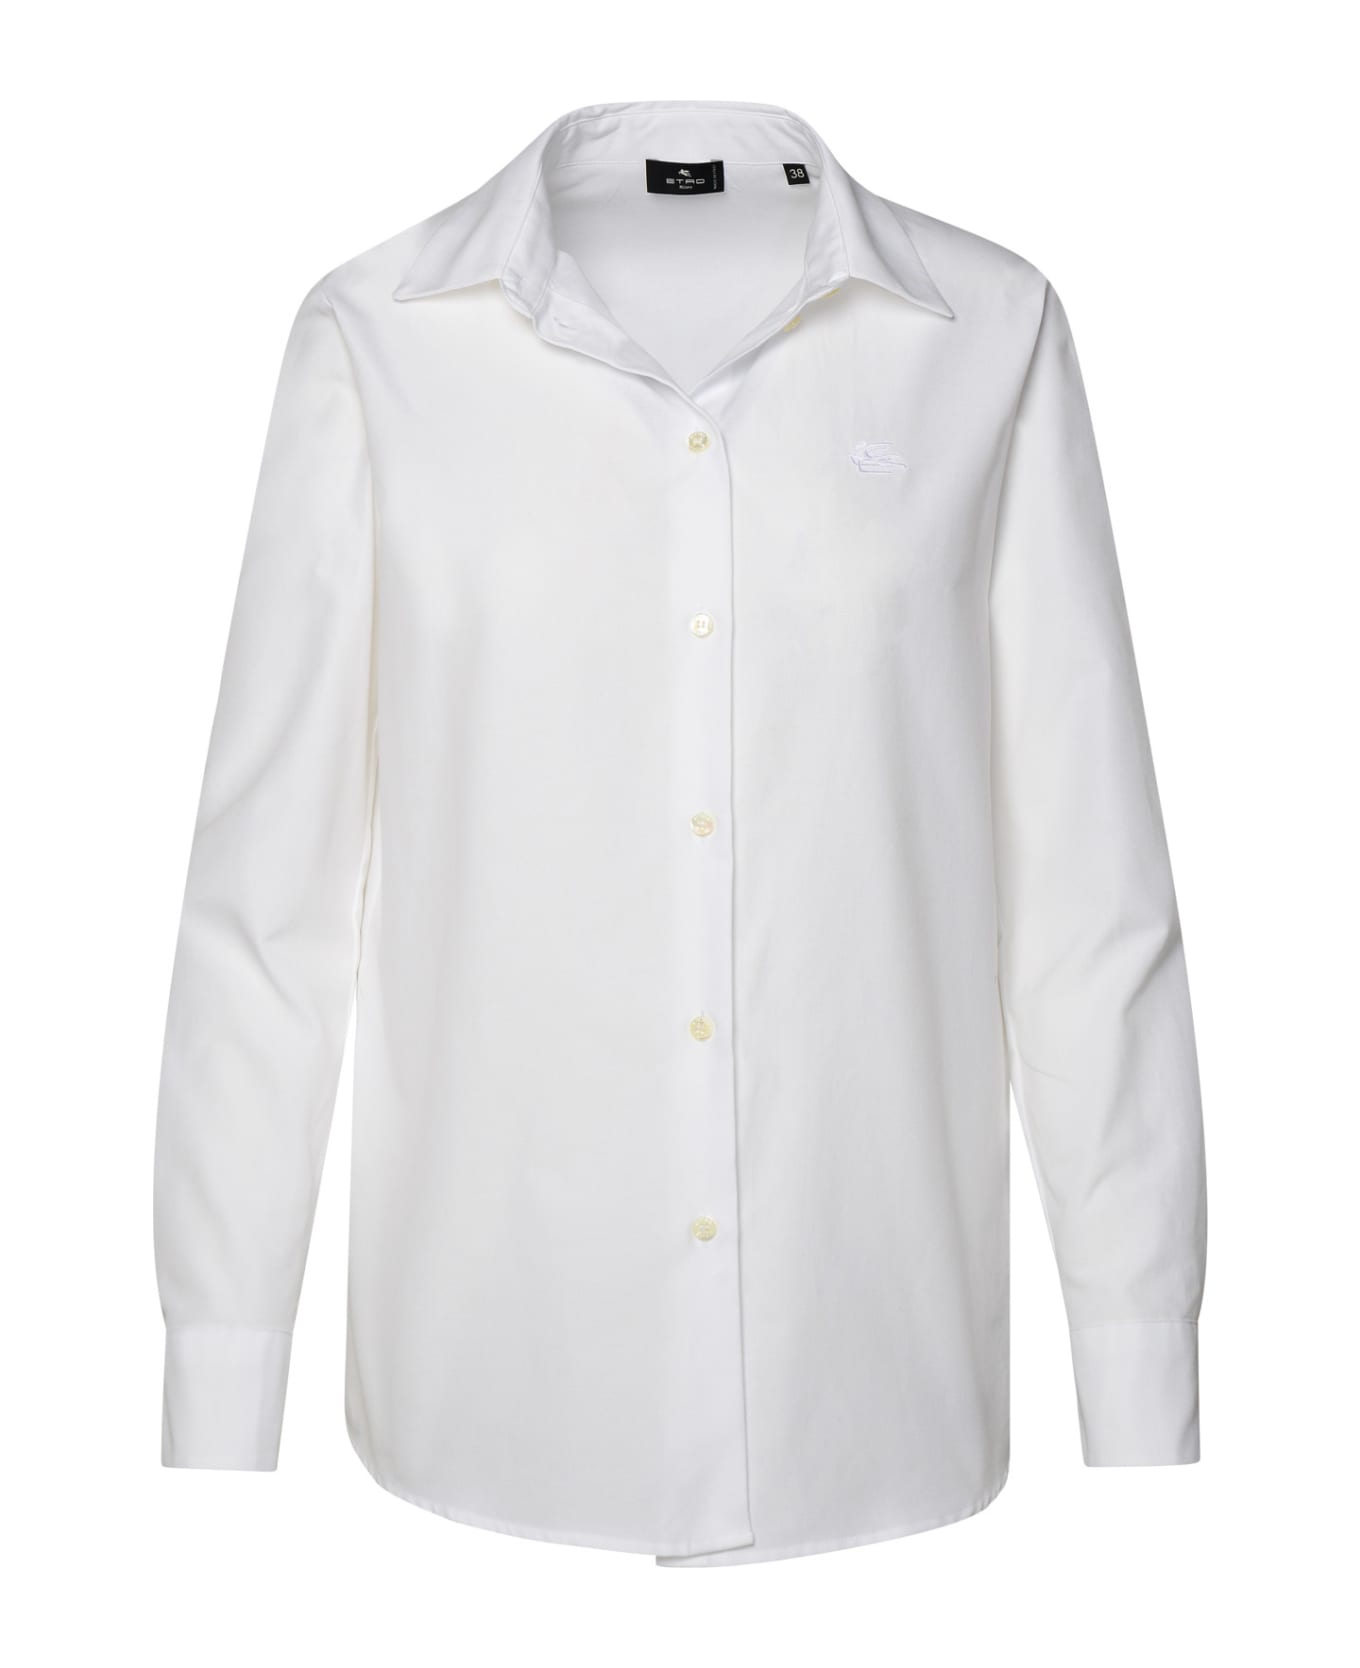 Etro White Cotton Shirt